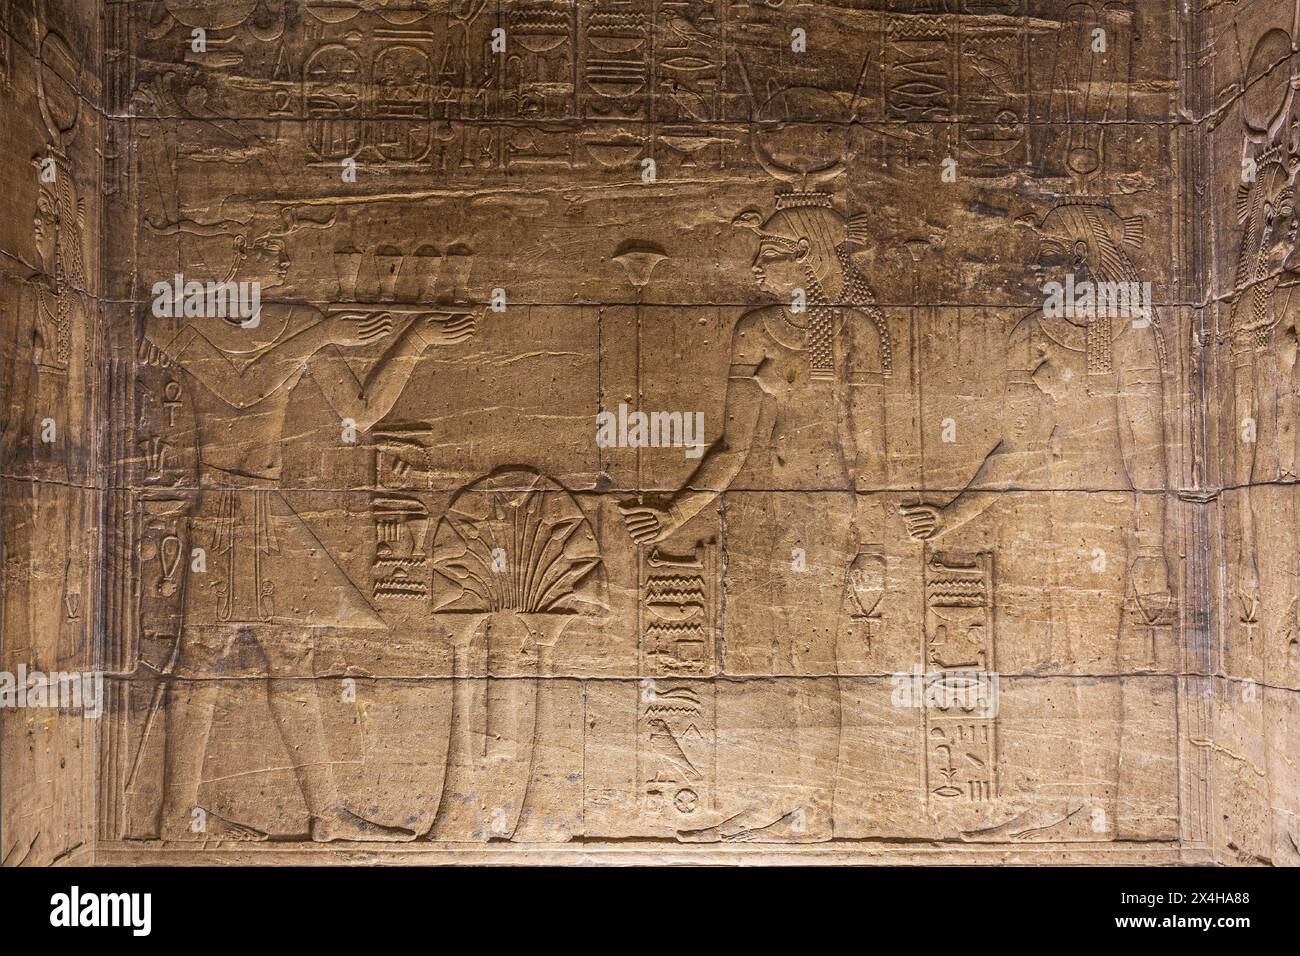 Un relief d'un pharaon faisant une offrande à la déesse Isis à l'intérieur du Temple d'Isis au complexe du Temple Philae sur l'île d'Agilkia (Nubie), en Égypte Banque D'Images